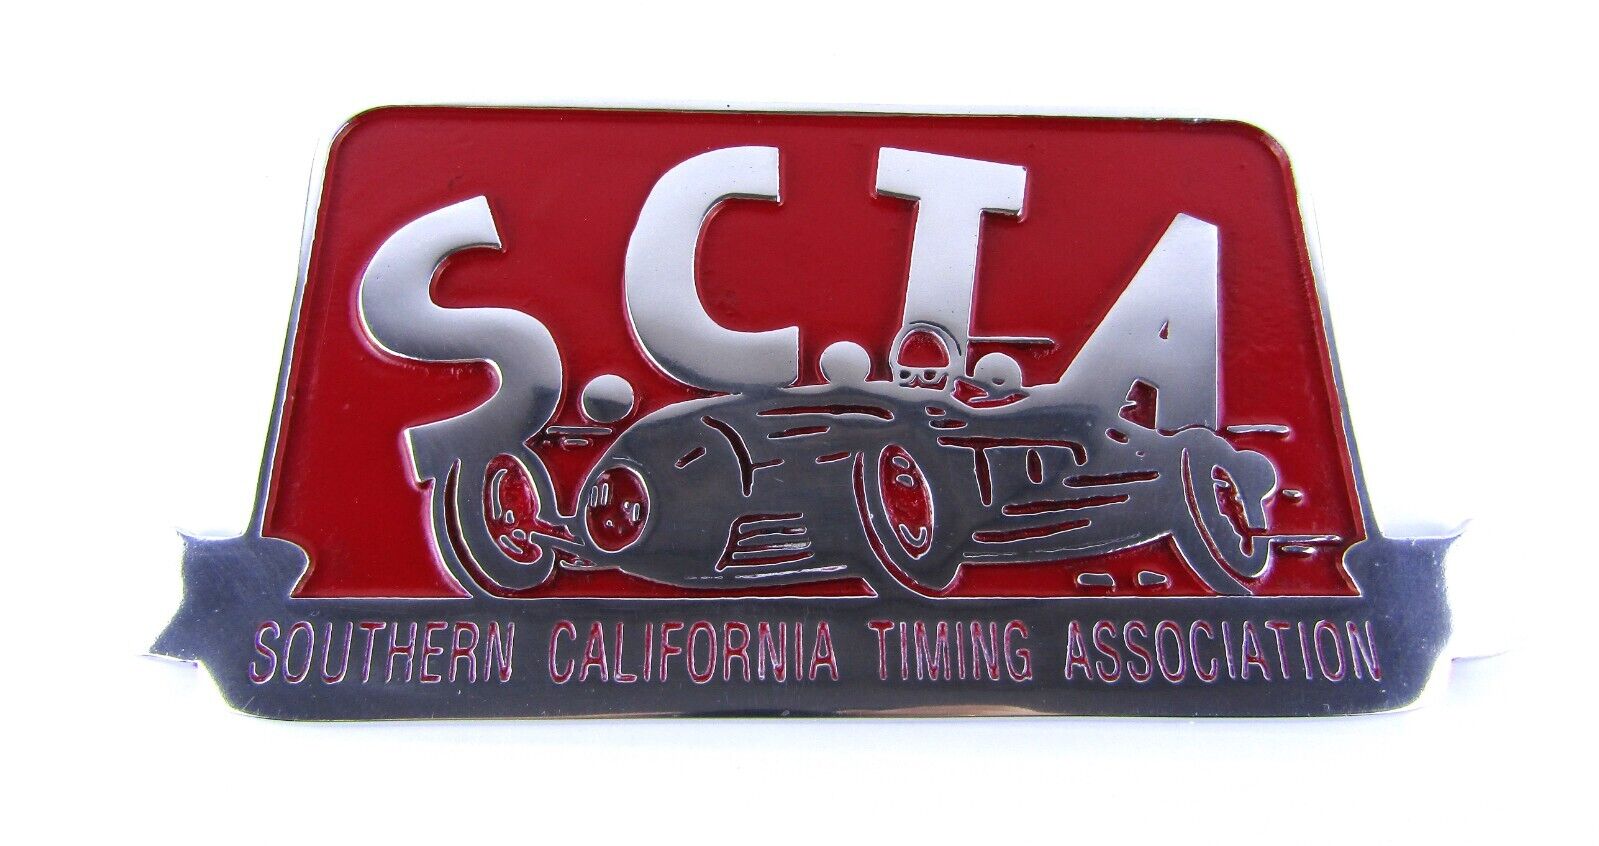 SCTA Southern California Timing Association Car Club Plaque - Aluminum 9” x 5”